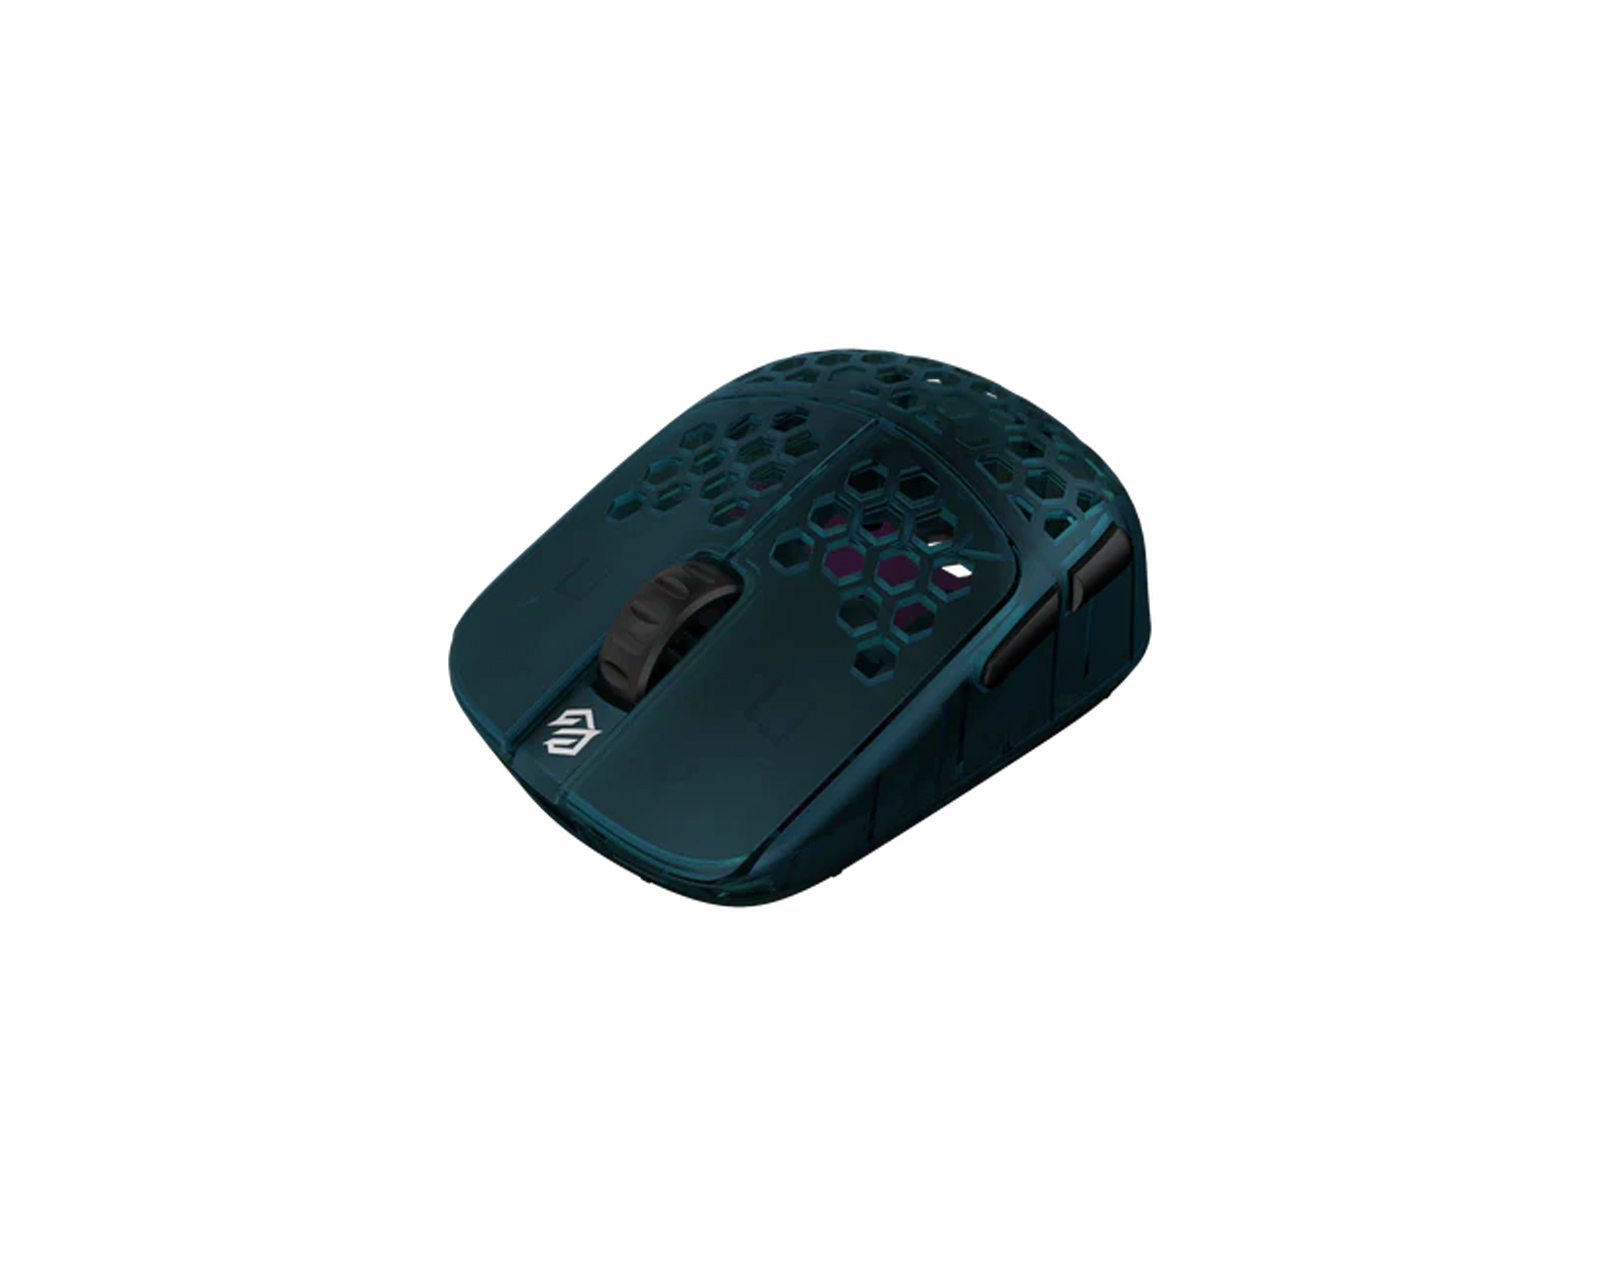 G-Wolves HSK Pro 4K Wireless Mouse Fingertip - Turquoise